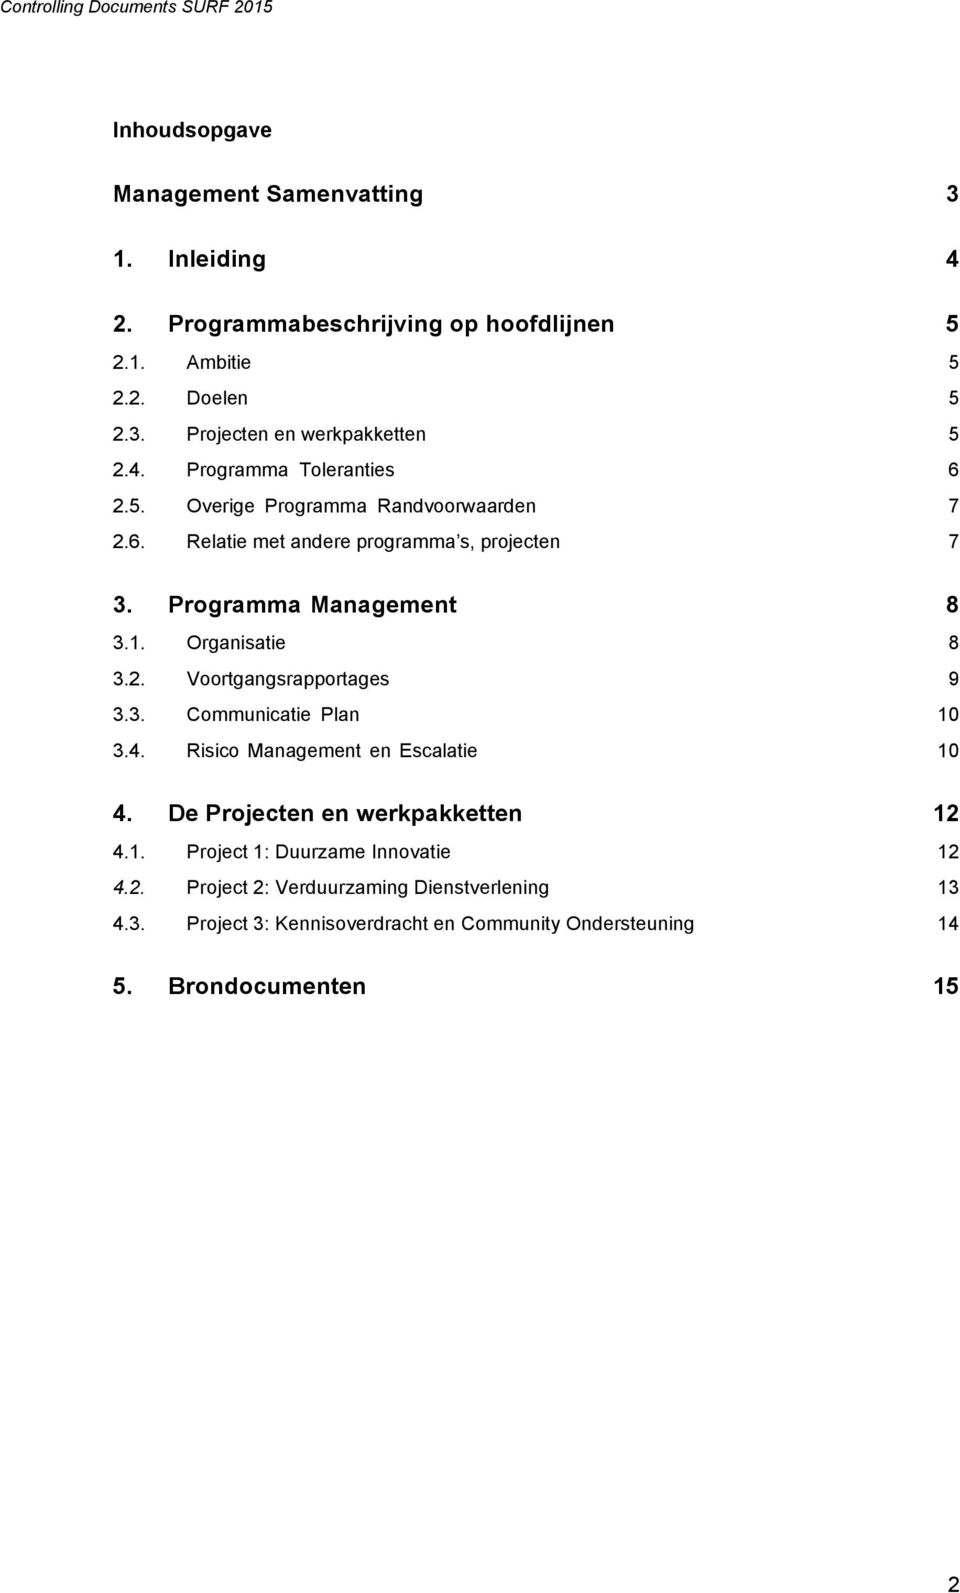 Organisatie 8 3.2. Voortgangsrapportages 9 3.3. Communicatie Plan 10 3.4. Risico Management en Escalatie 10 4. De Projecten en werkpakketten 12 4.1. Project 1: Duurzame Innovatie 12 4.